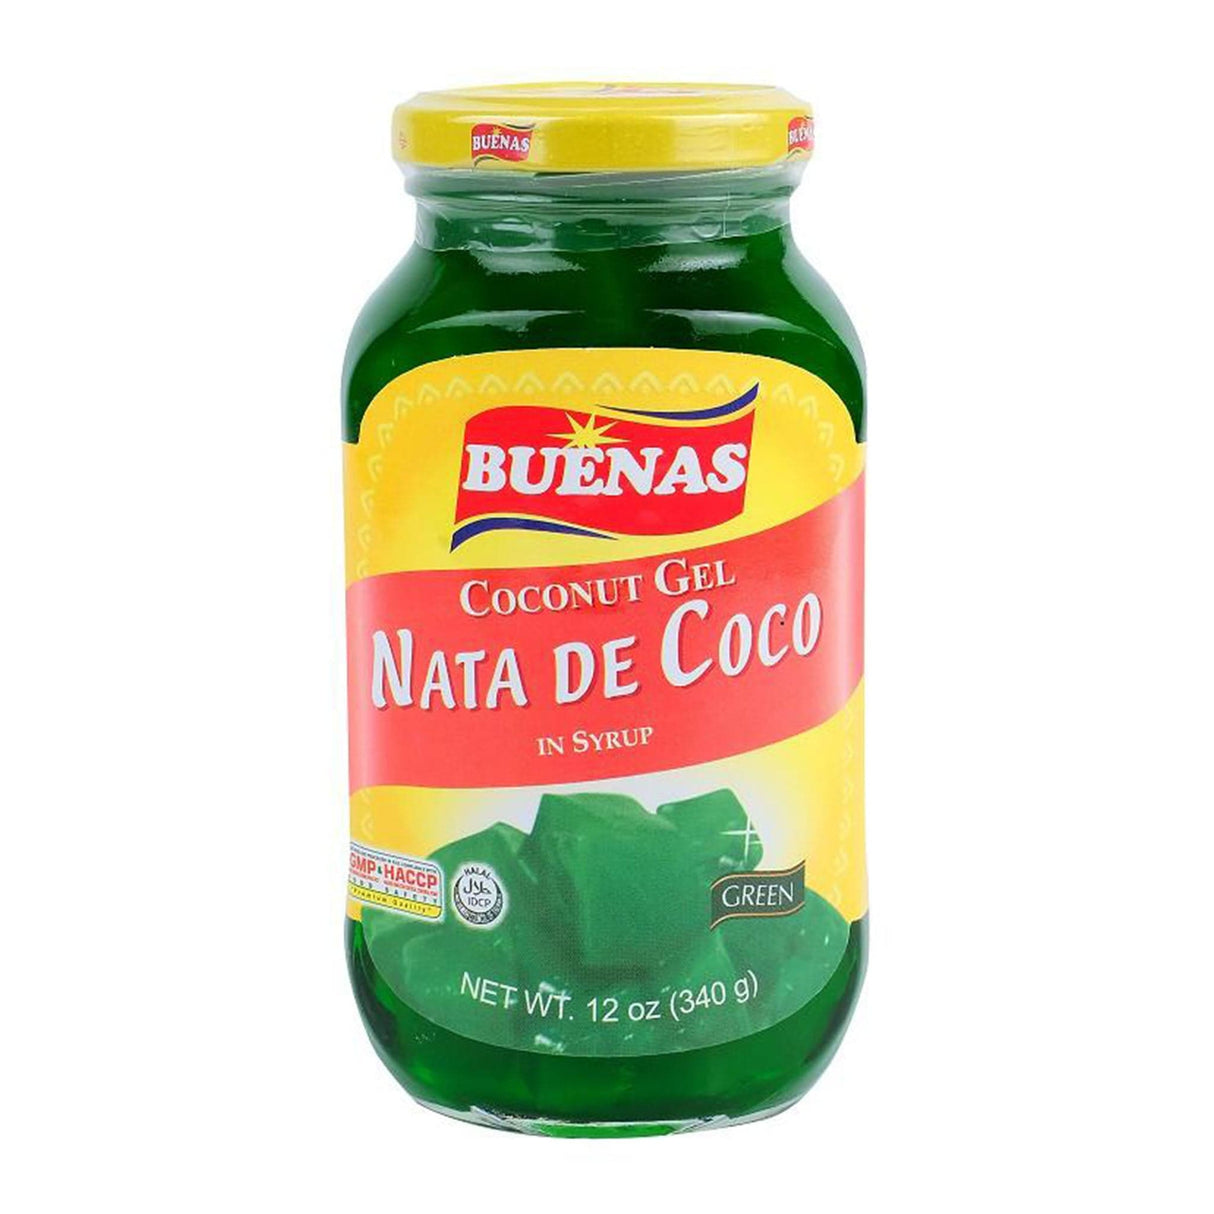 Buenas Coconut Gel Nata De Coco in Syrup (Green)